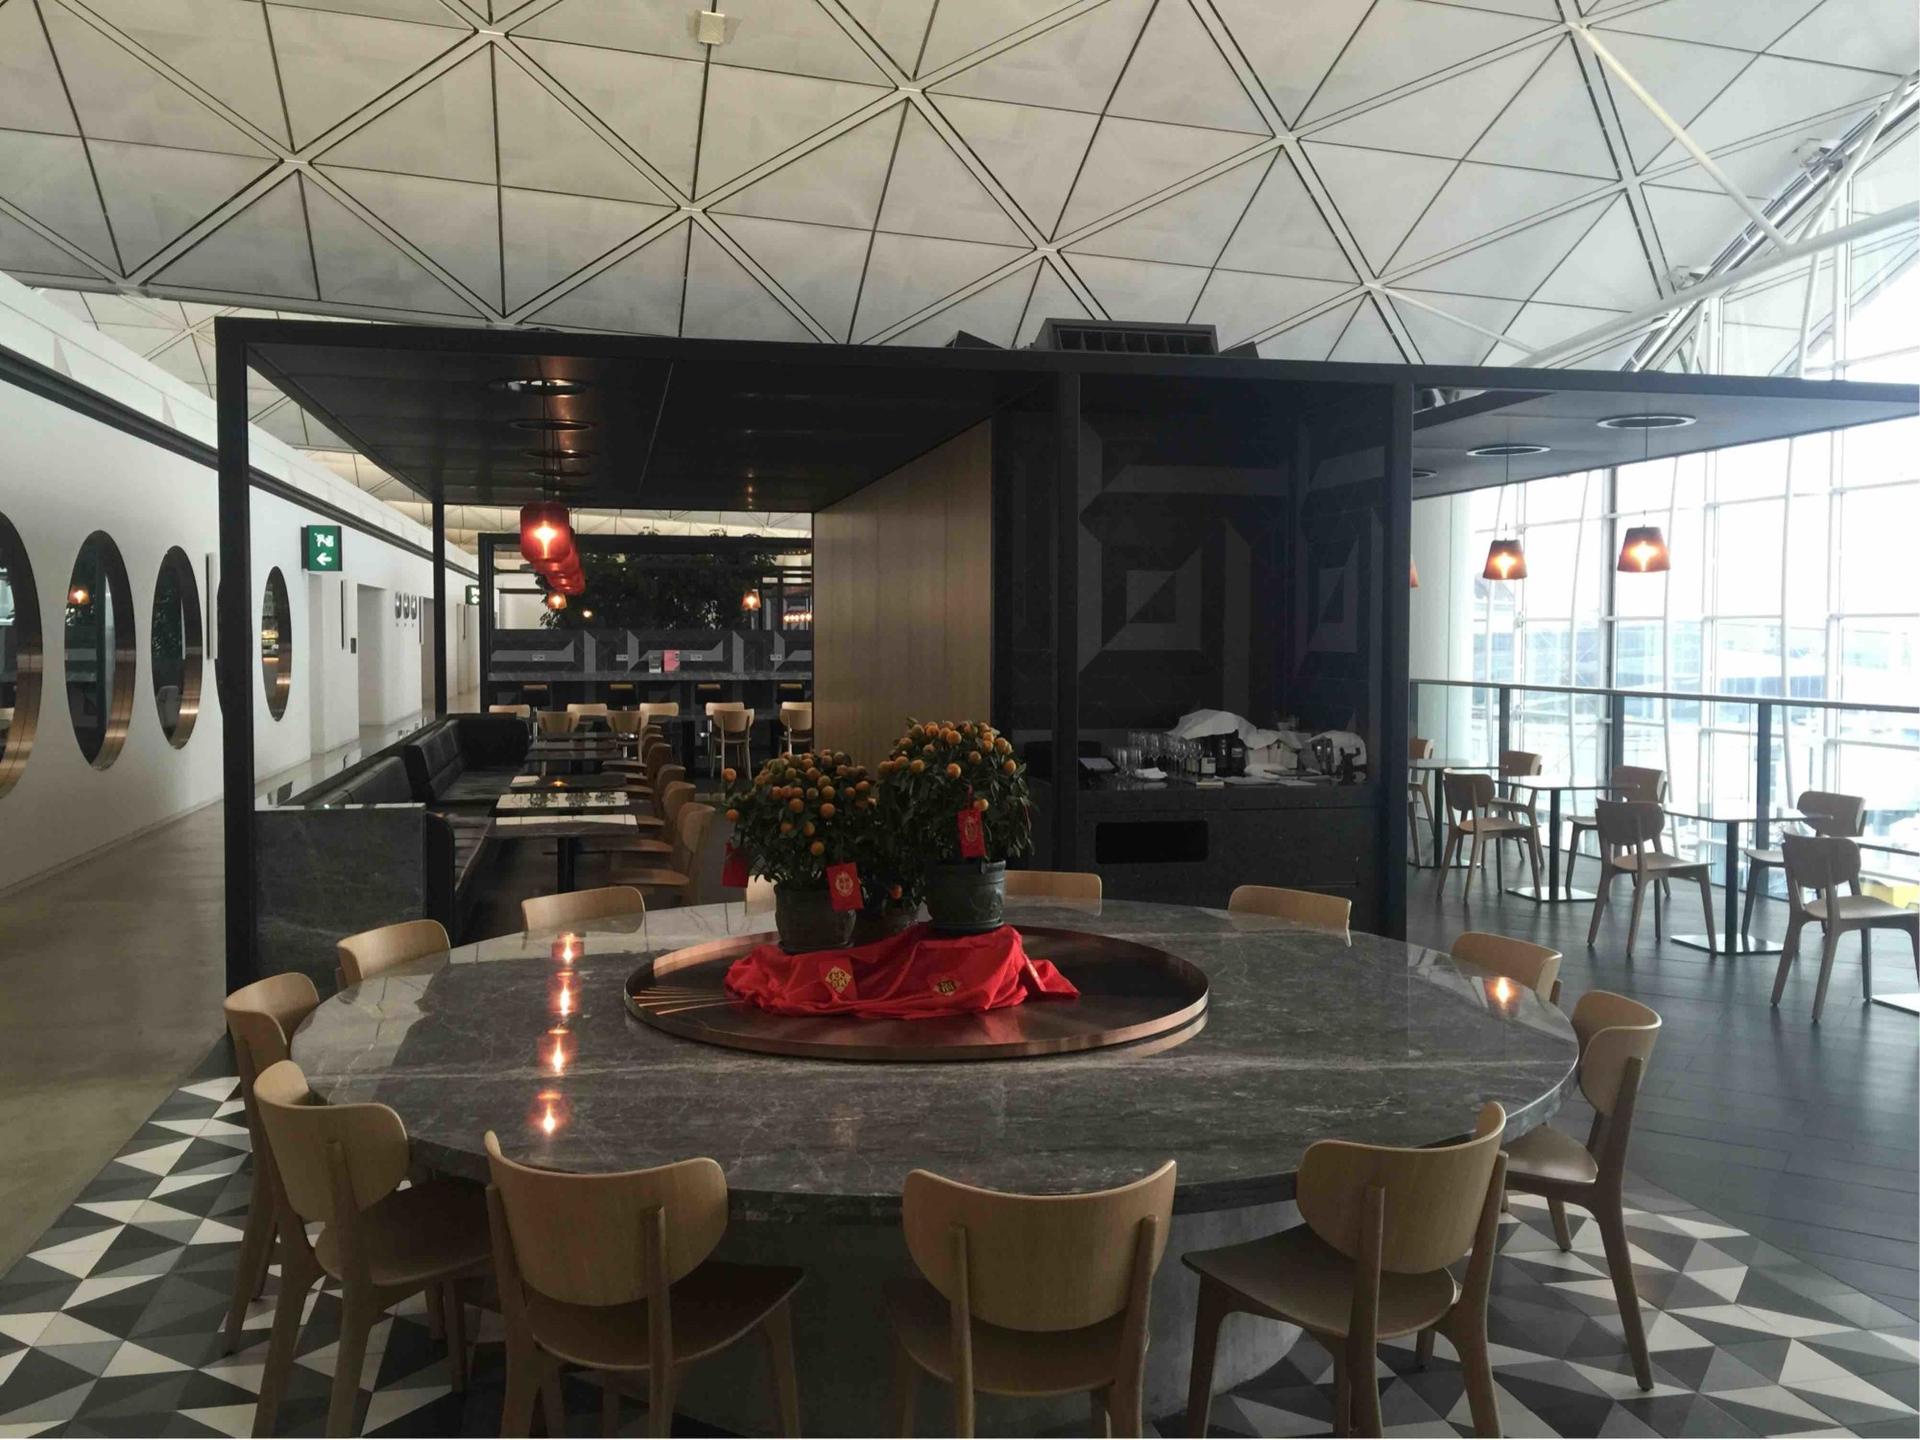 The Qantas Hong Kong Lounge image 25 of 99